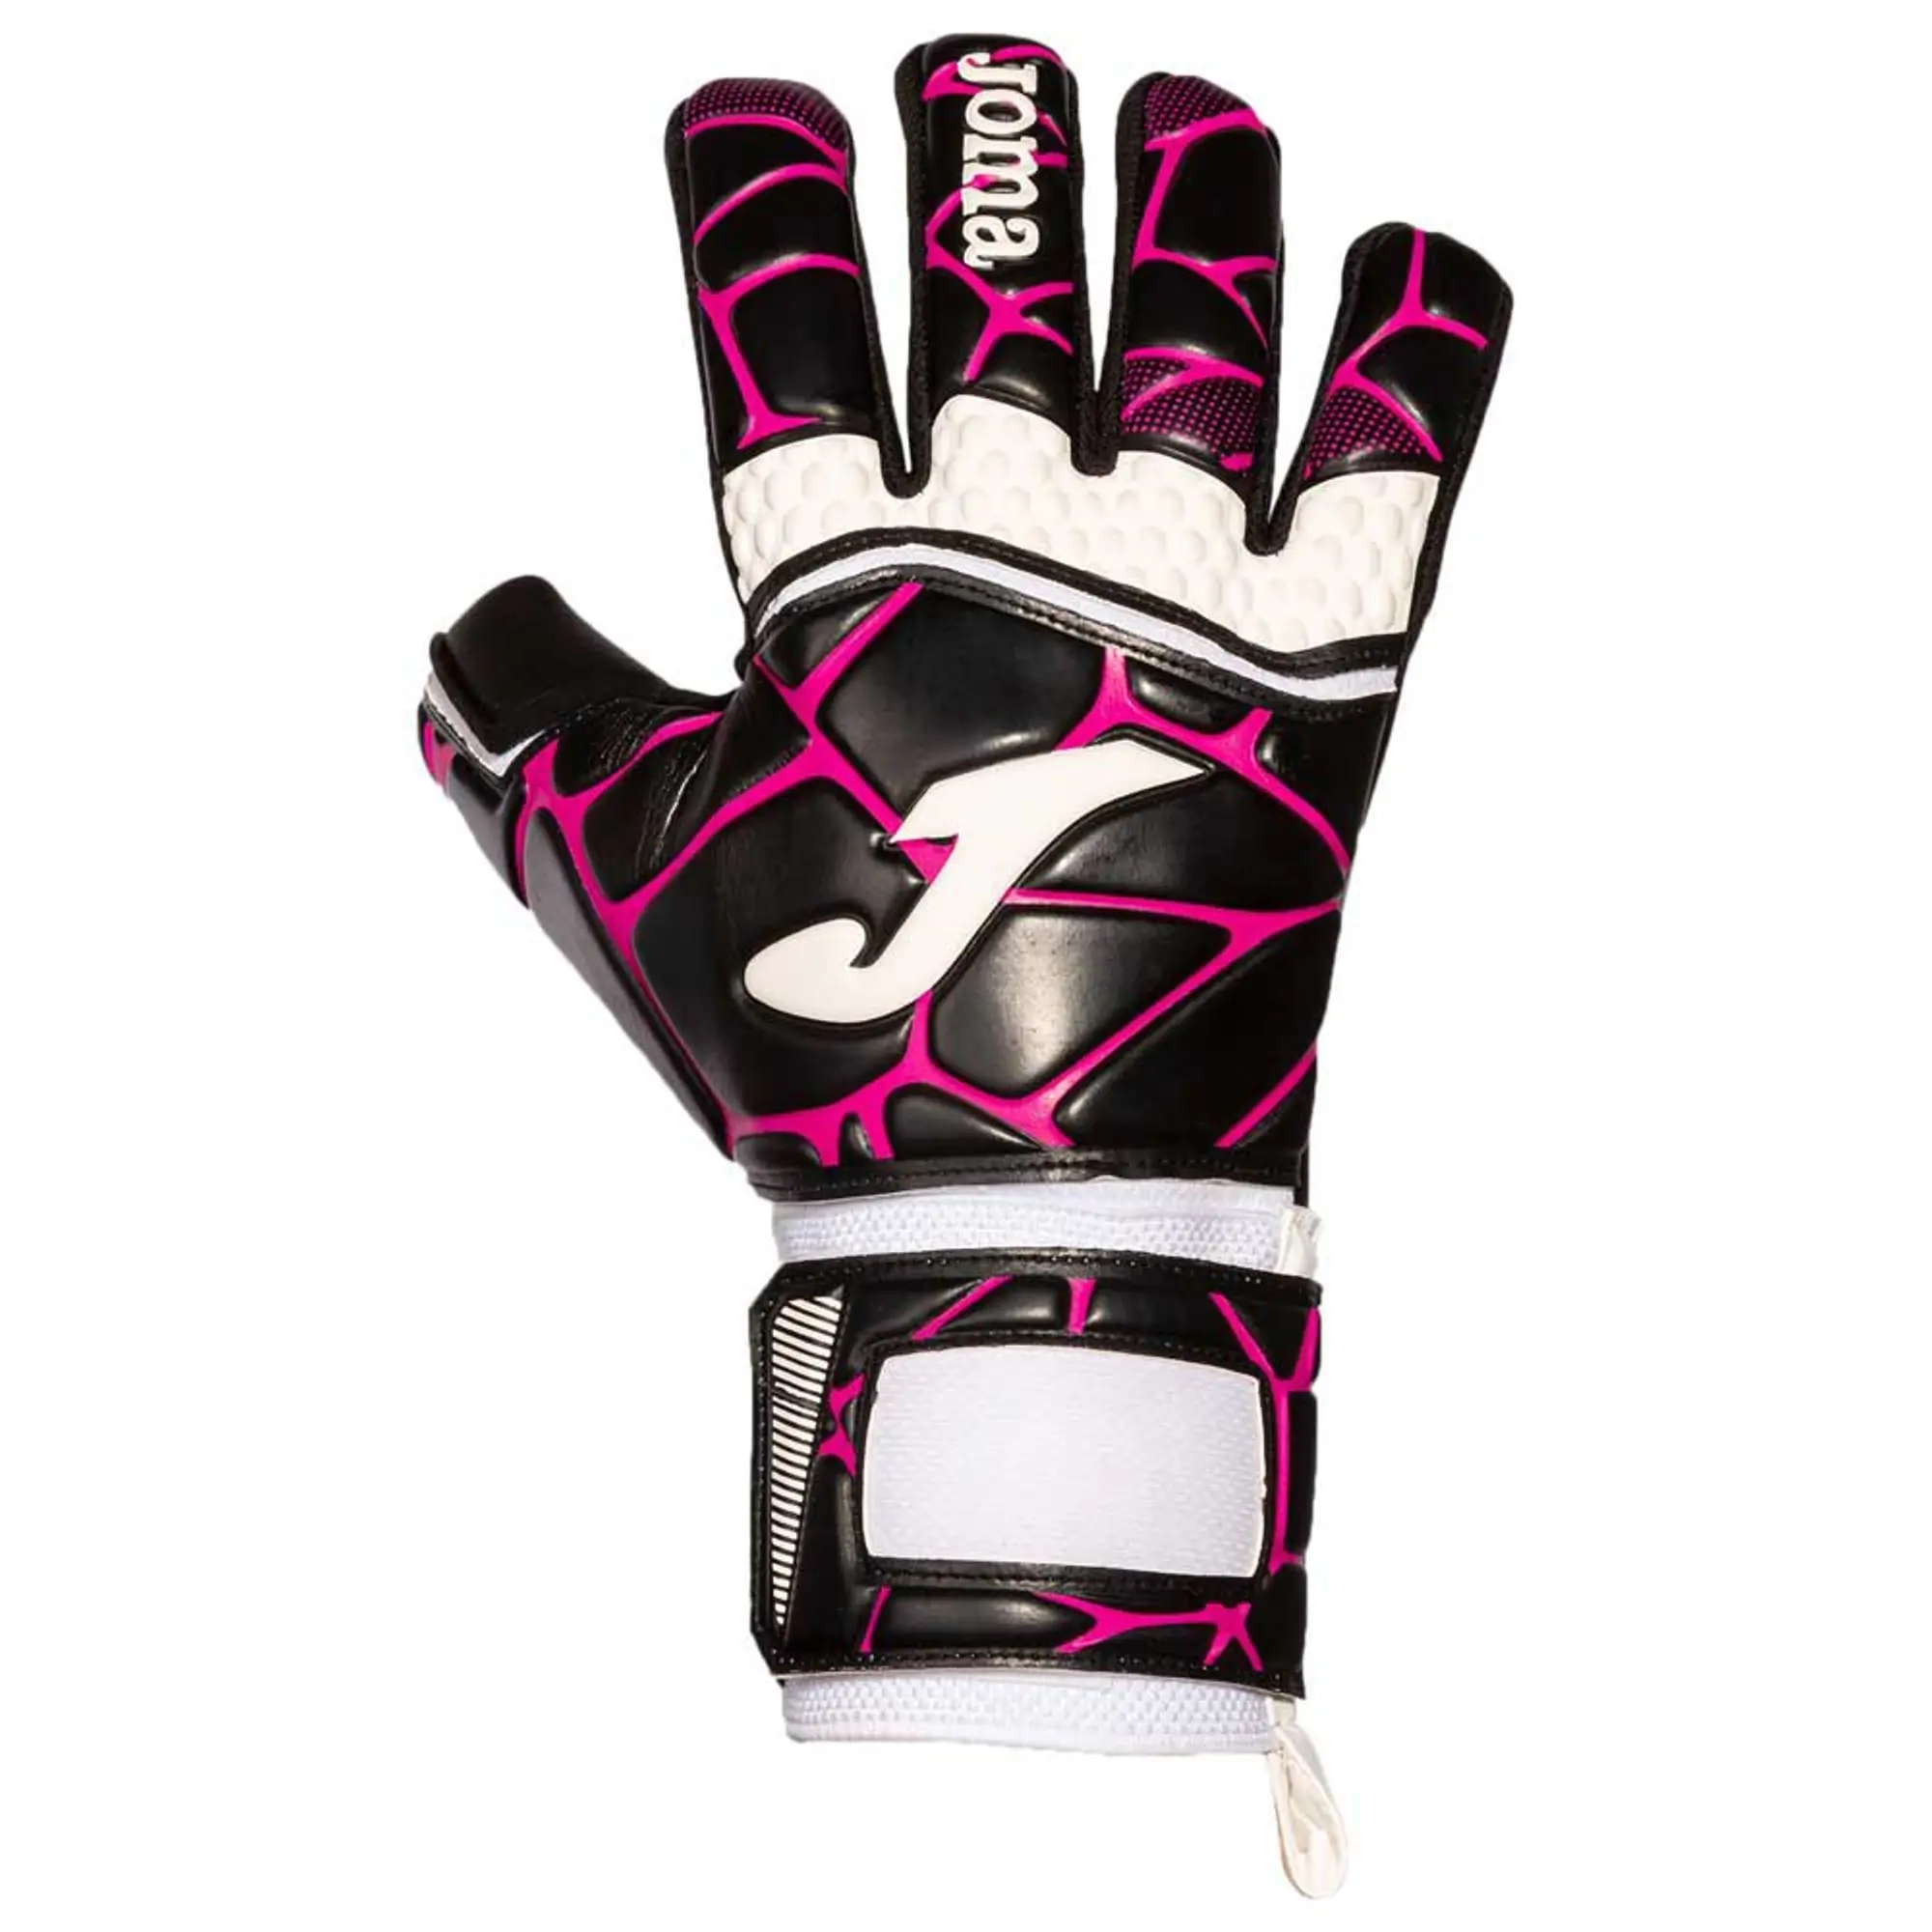 Joma Gk-pro Goalkeeper Gloves  - Black